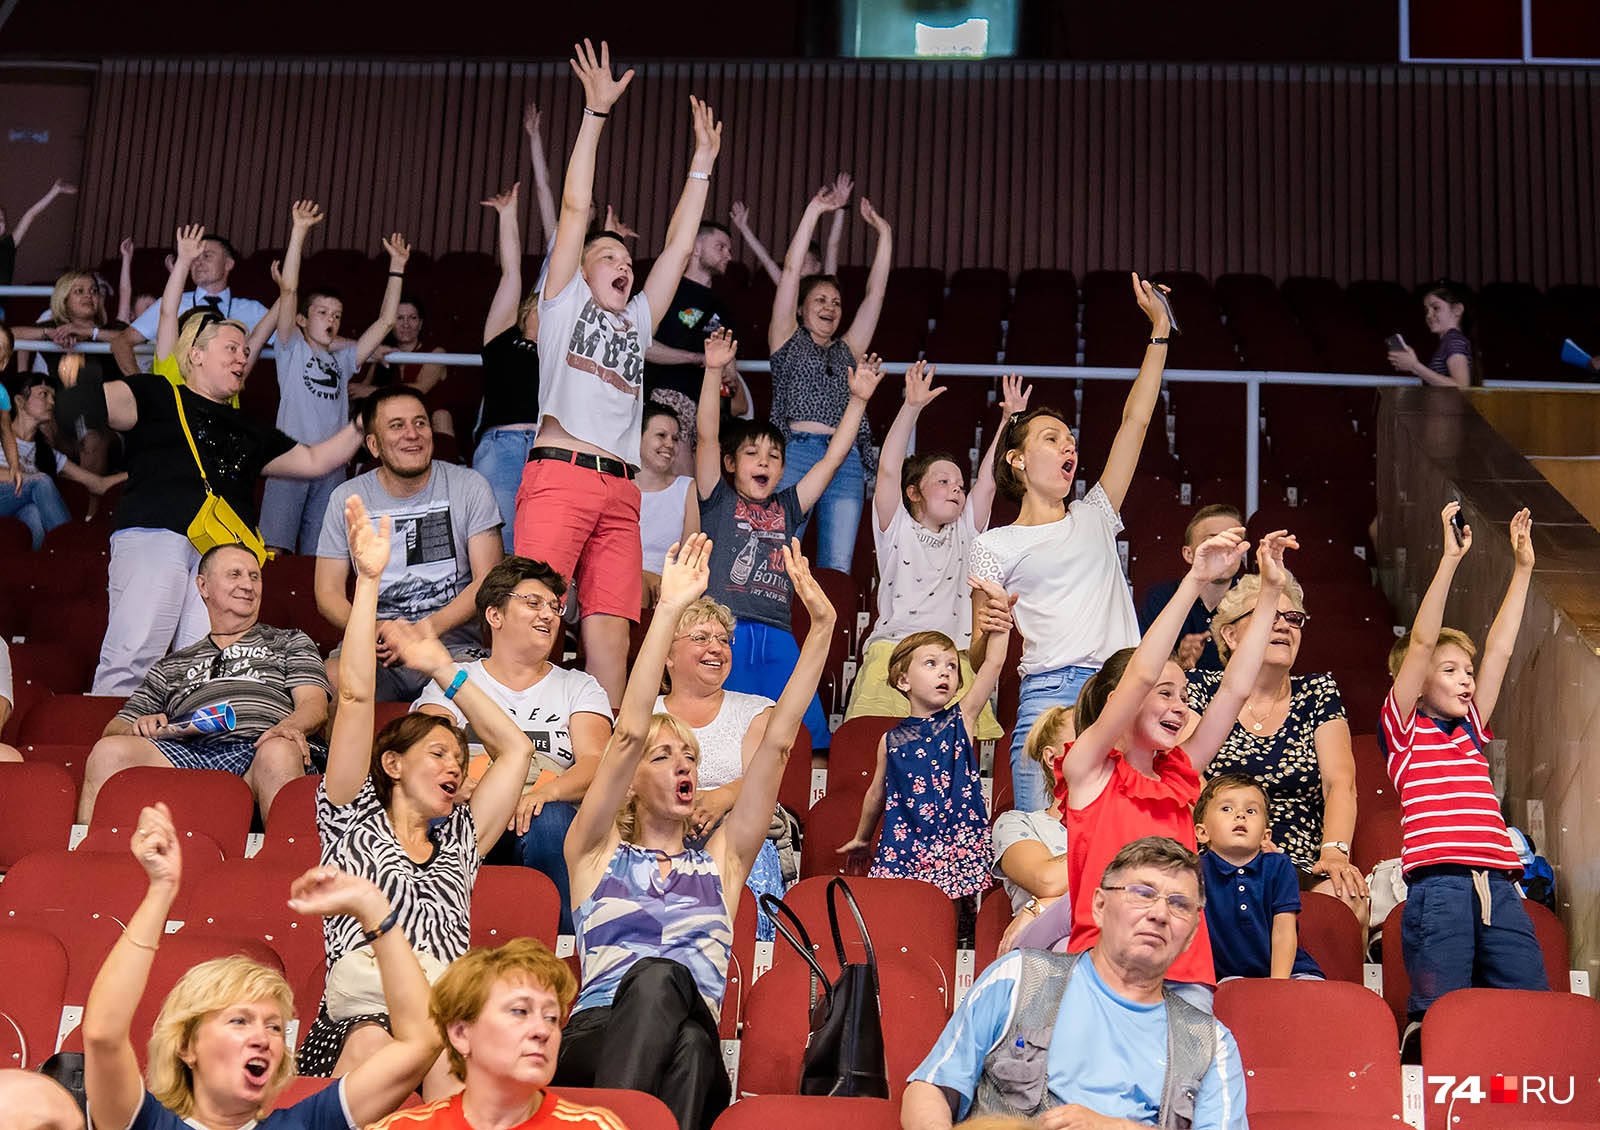 В зрителей «пуляли» футболками с символикой первенства и Кубка России